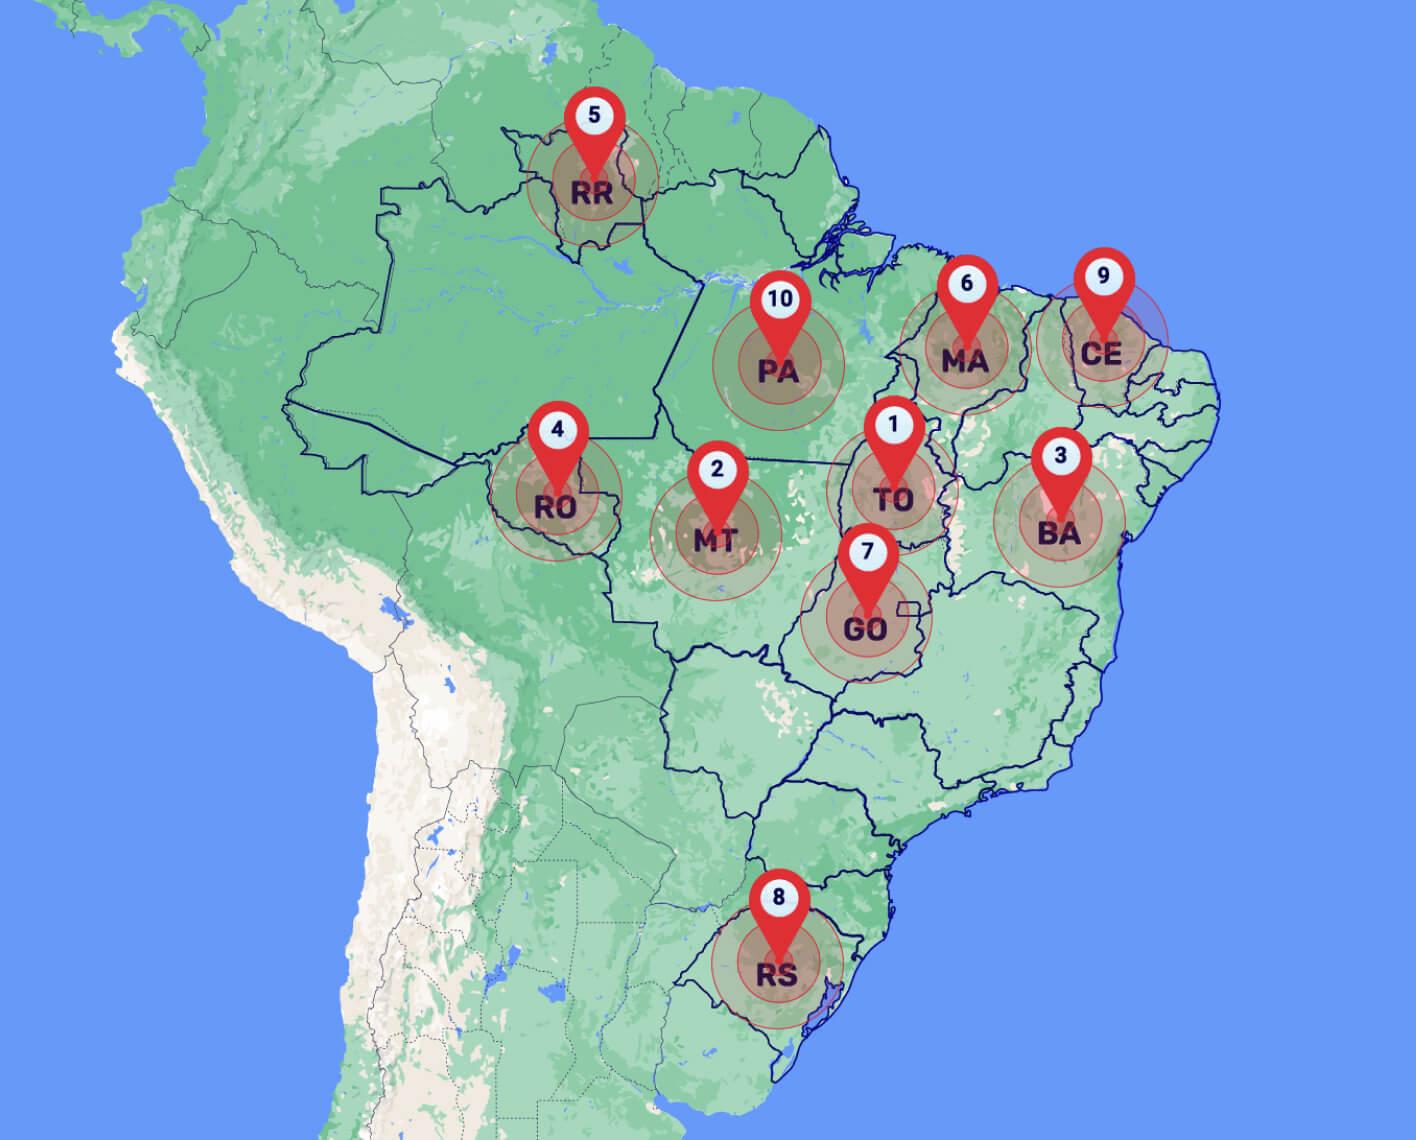 Mapa do Brasil com 10 pins numerados: 01 em Tocantins, 02 no Mato Grosso, 03 na Bahia, 04 em Rondônia, 05 em Roraima, 06 no Maranhão, 07 em Goiás, 08 no Rio Grande do Sul, 09 no Ceará e 10 no Pará